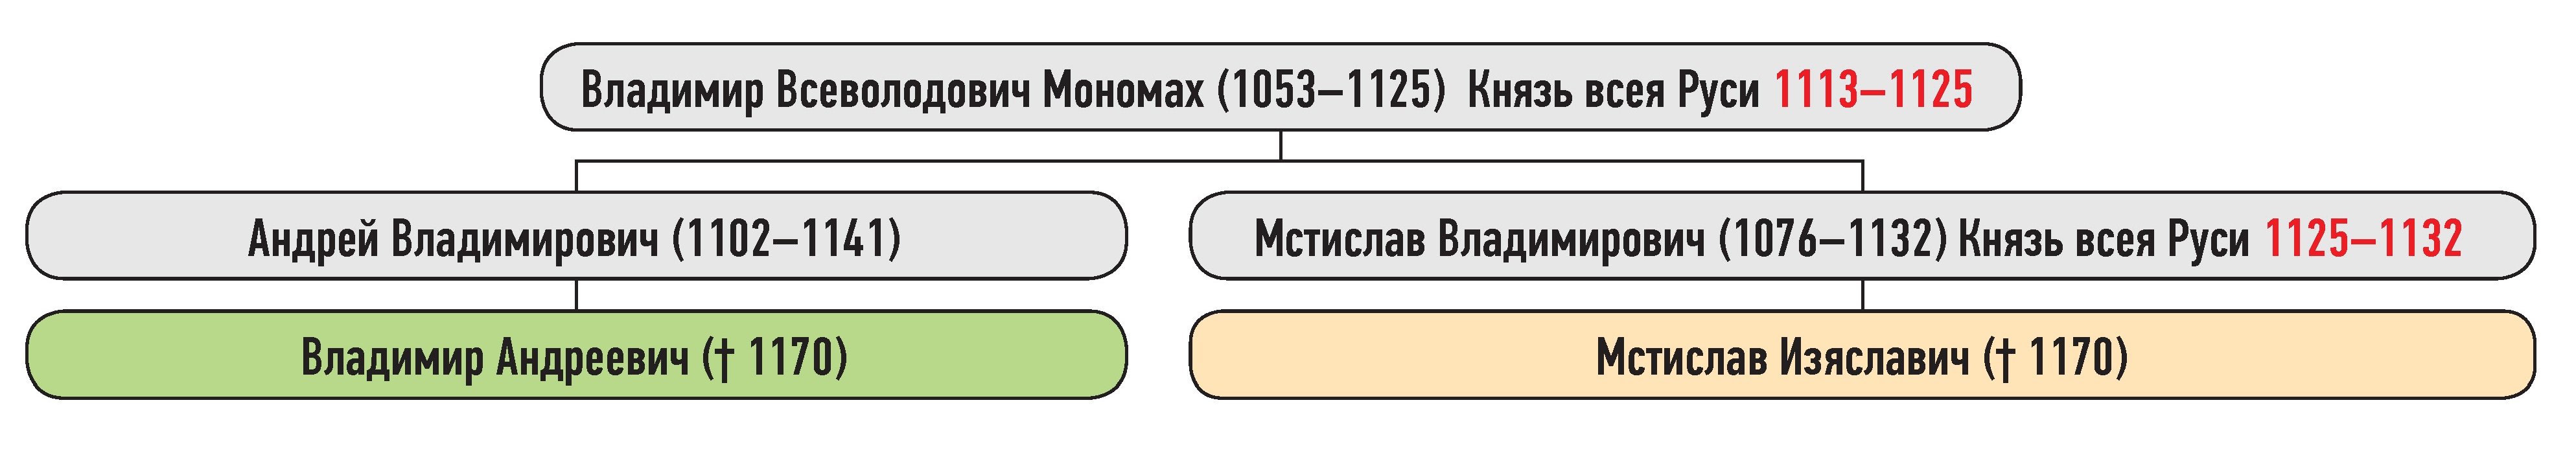 Генеалогическая схема к усобице Мстислава Изяславича и Владимира Андреевича в 1162 г.